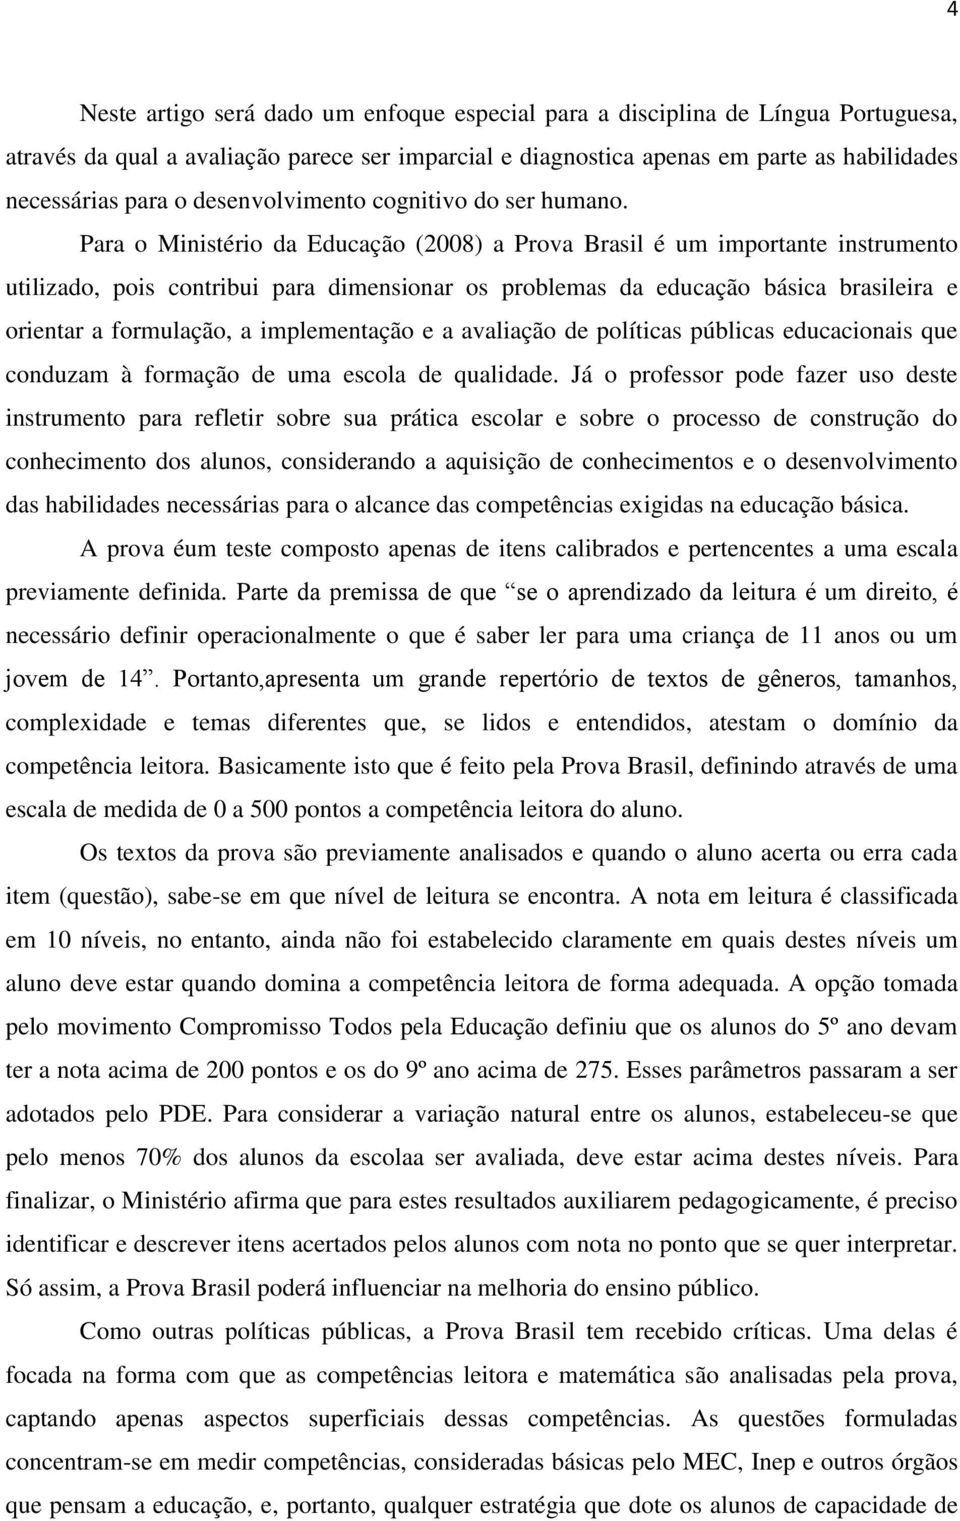 Para o Ministério da Educação (2008) a Prova Brasil é um importante instrumento utilizado, pois contribui para dimensionar os problemas da educação básica brasileira e orientar a formulação, a